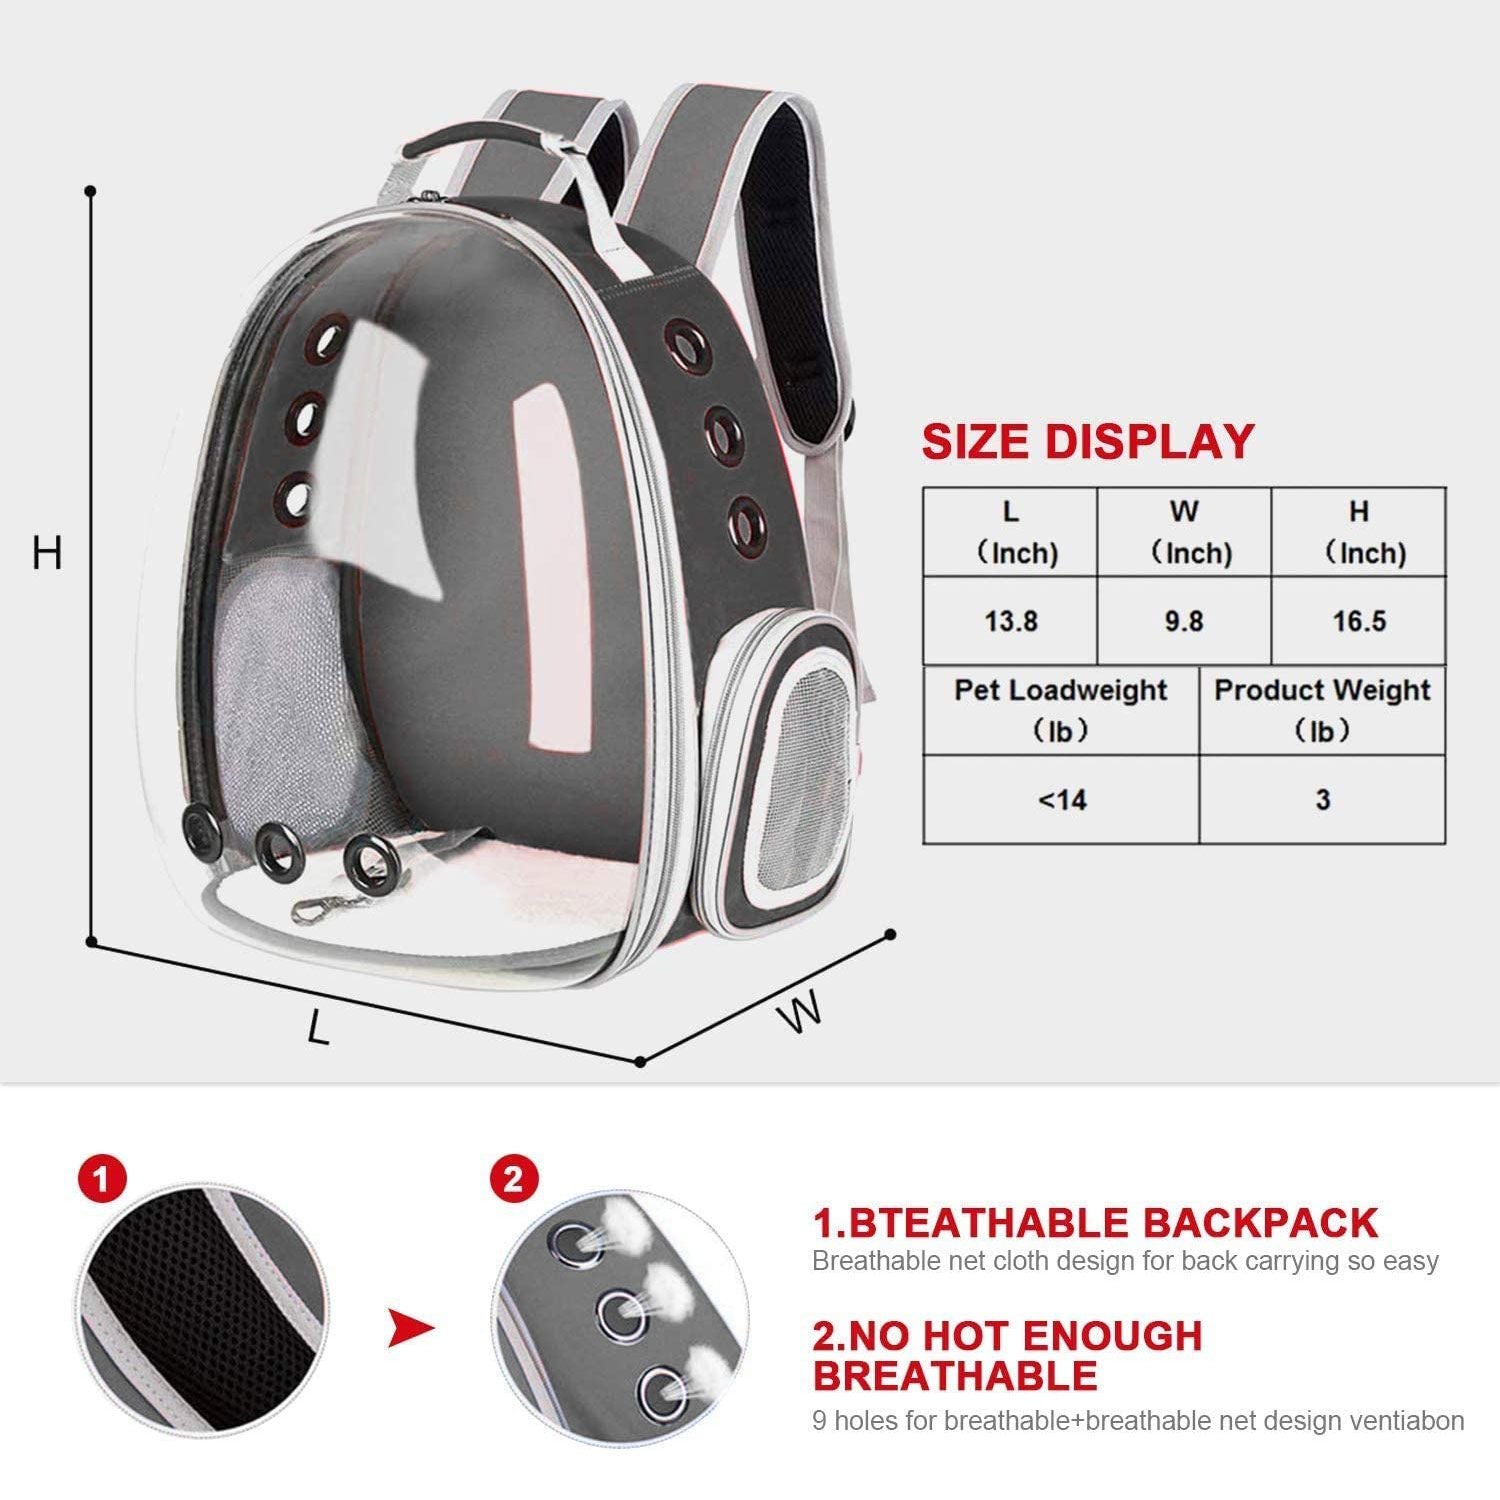 Floofi Space Capsule Backpack - Model 1 (Grey)